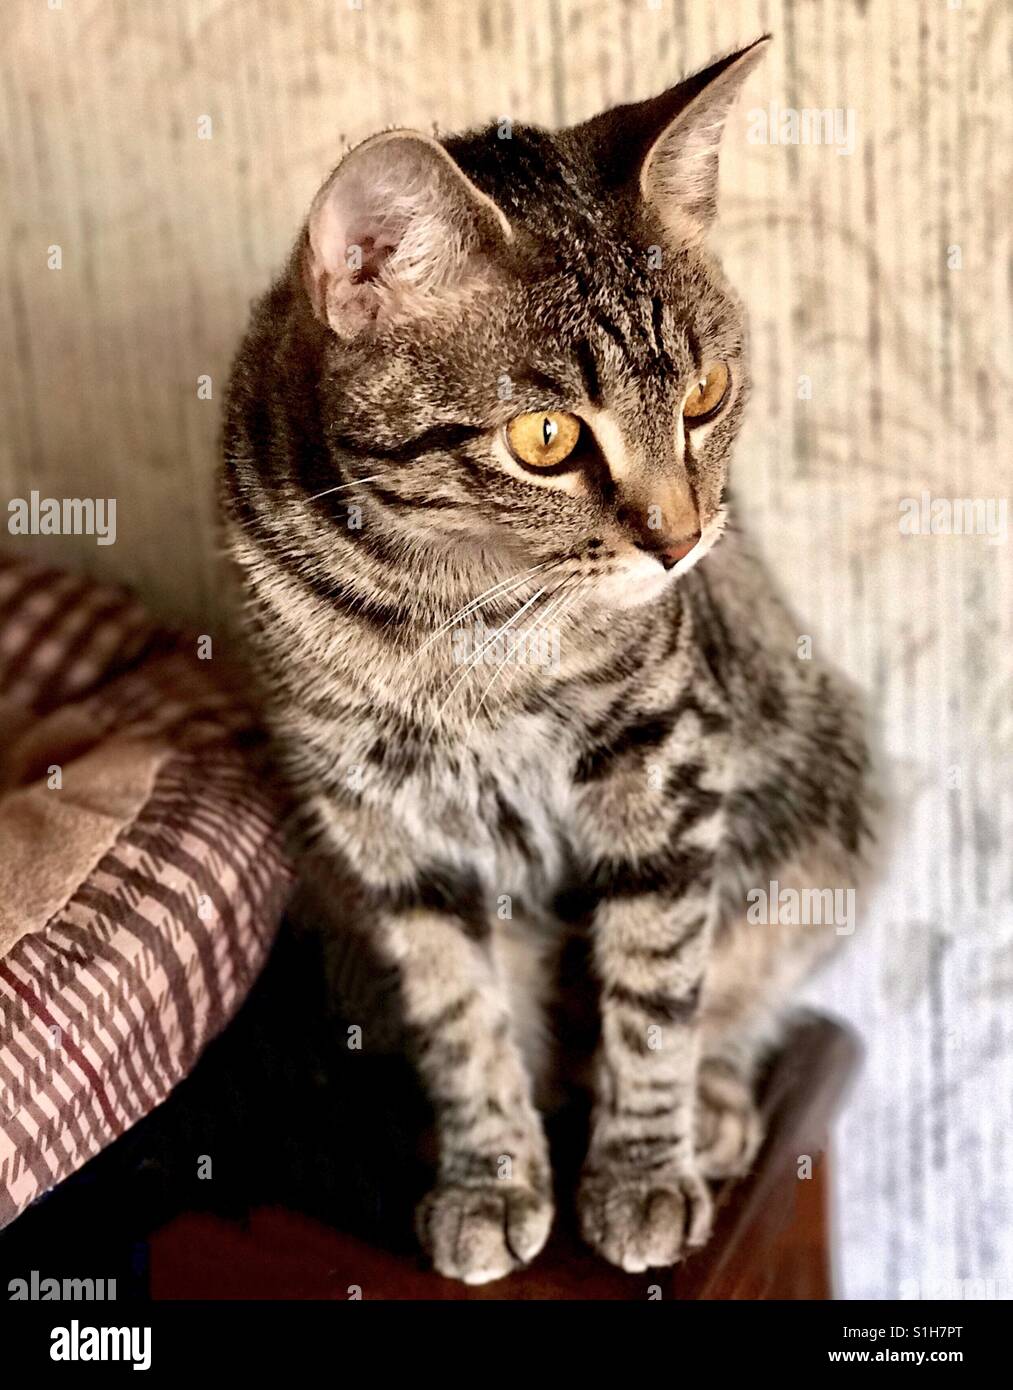 Retrato de tu belleza interna o American Shorthair gato atigrado teenage gatito con hermosos ojos prominentes y franjas de oro Foto de stock